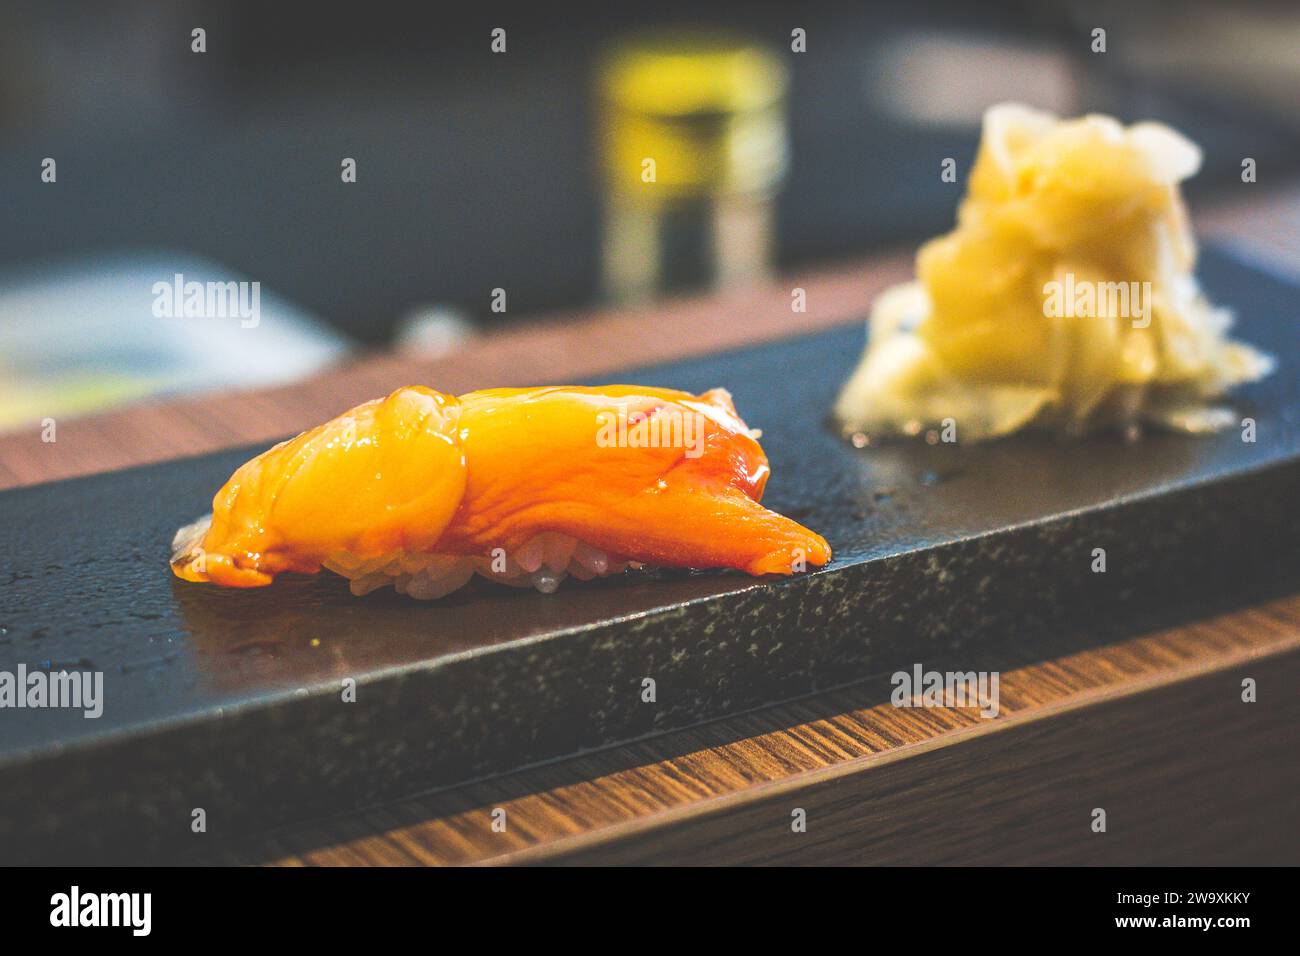 Eine Portion japanisches Nigiri-Reis-Sushi mit japanischem eingelegtem Ingwer Stockfoto